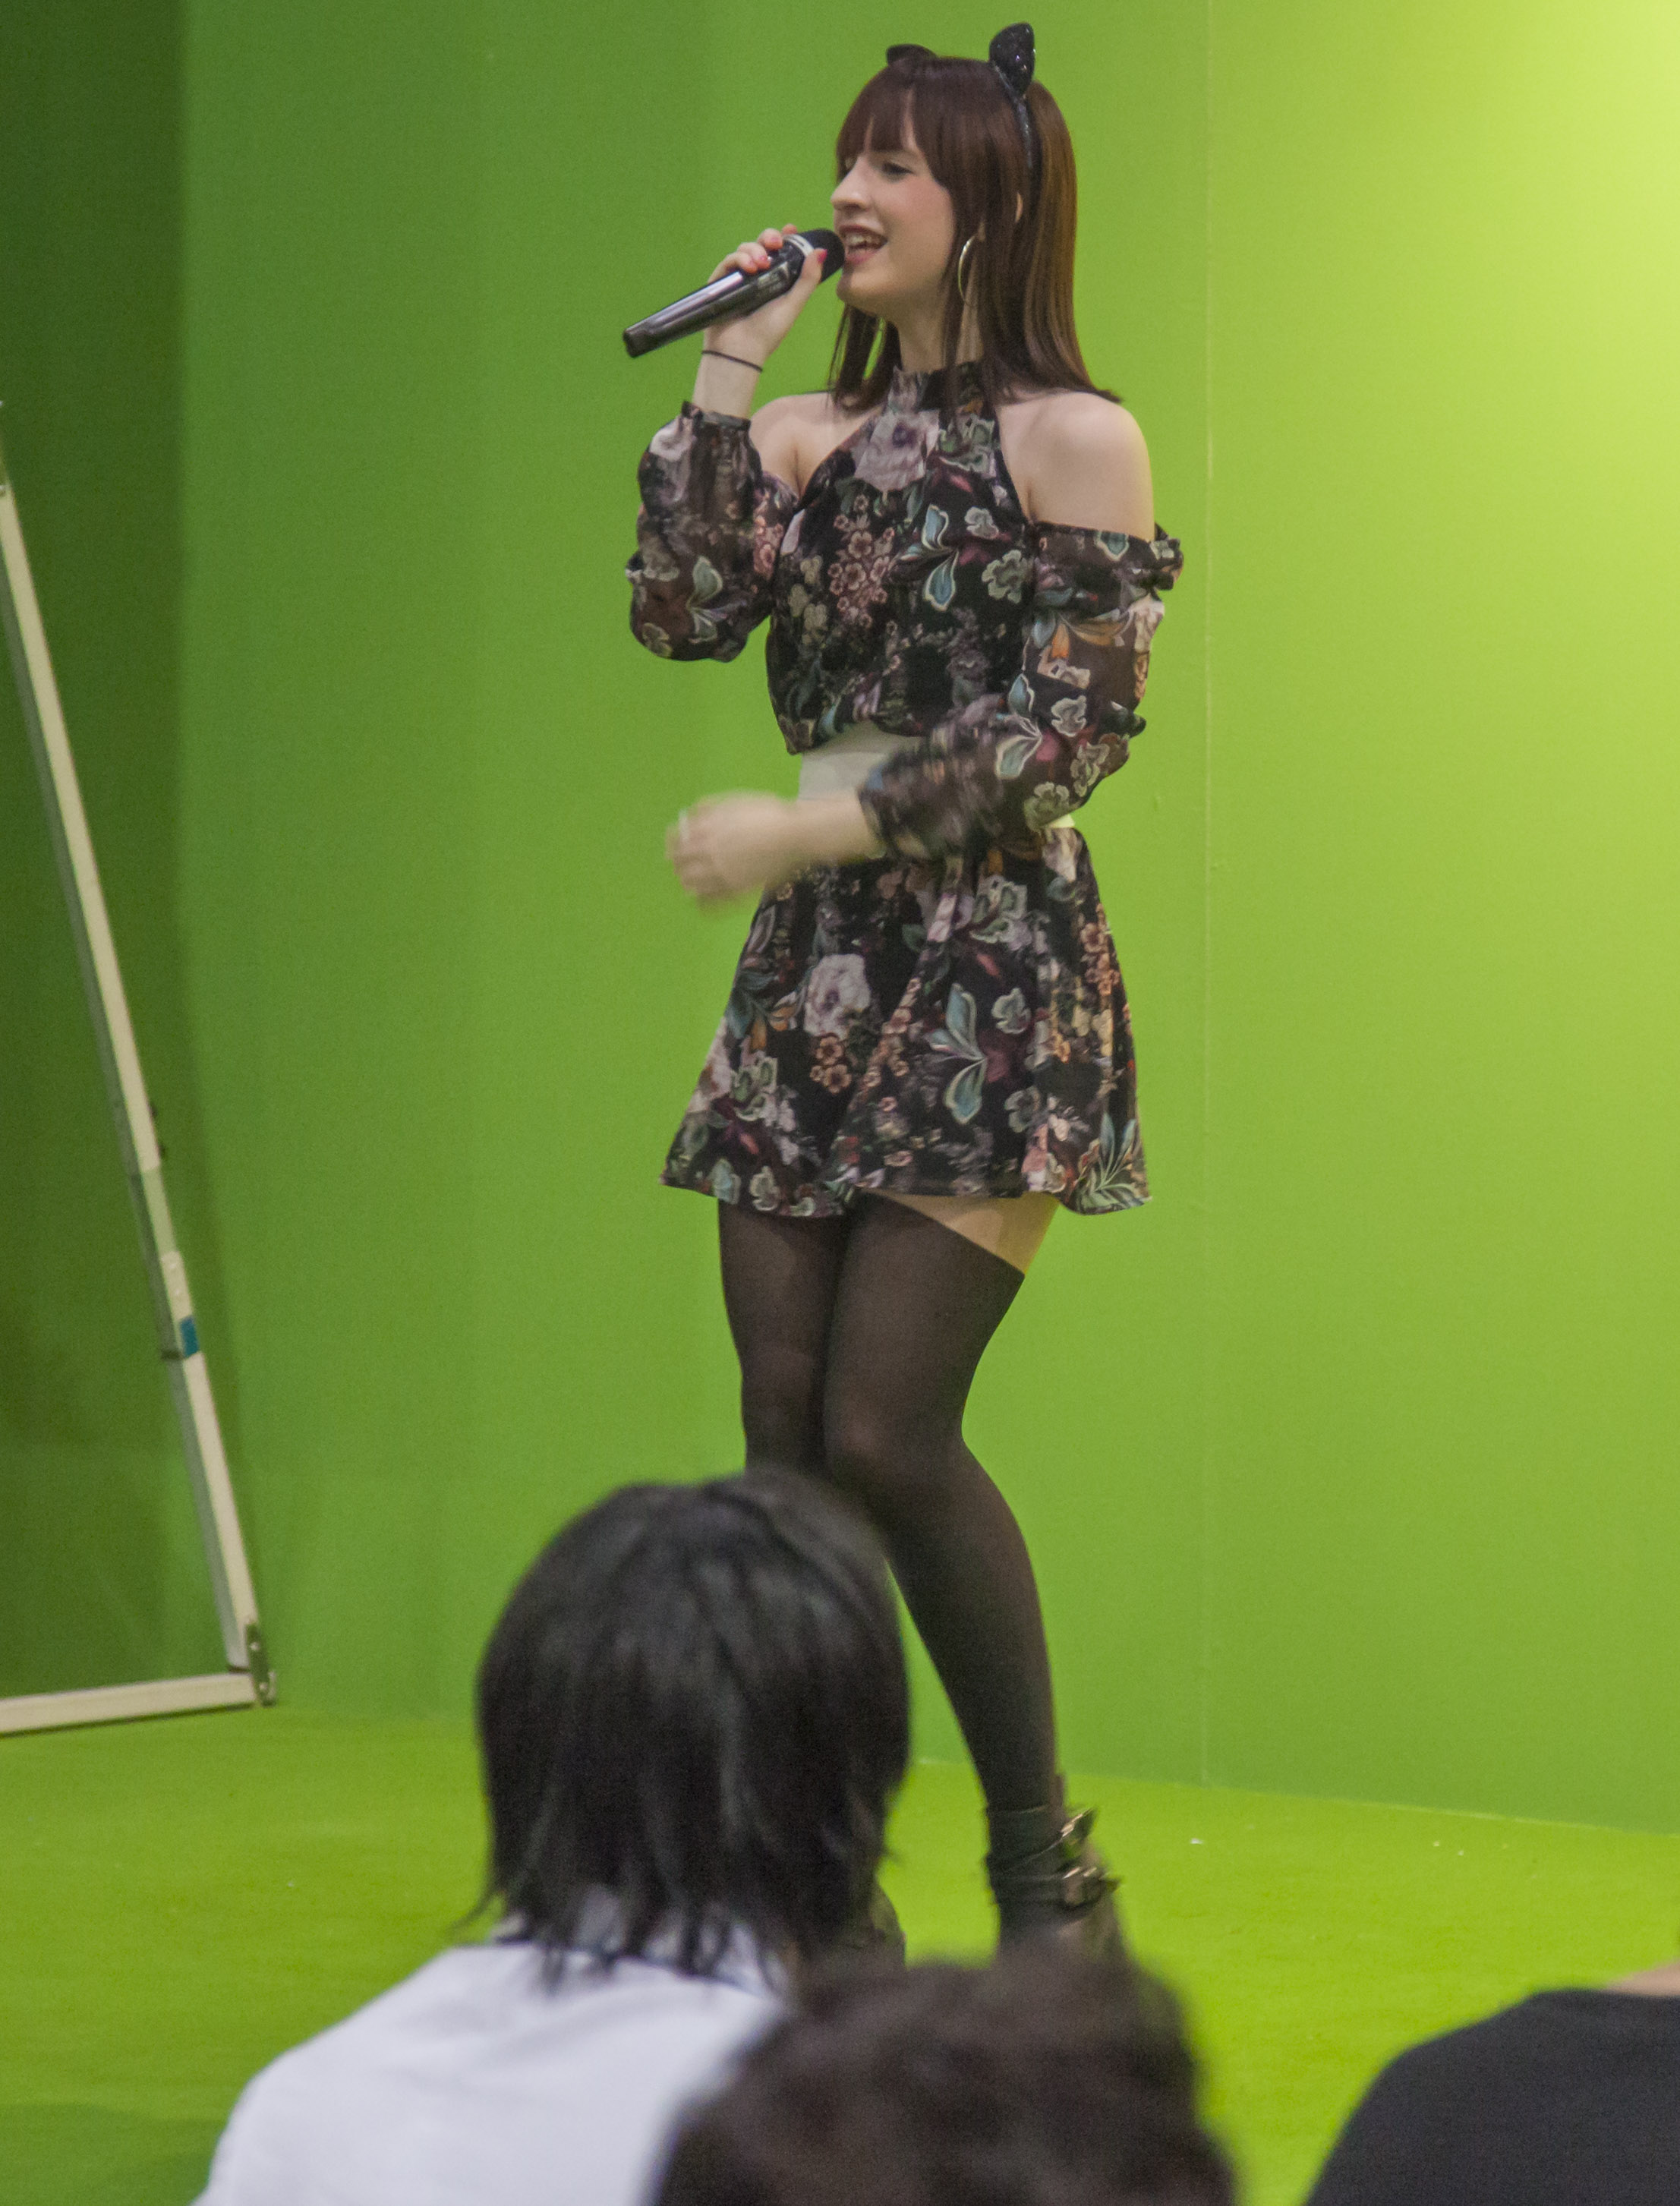 Yami Airii triunfa en Japón con sus canciones al más puro estilo anime. Las nuevas profesiones, tales como "idol" o "cosplayer" son un efecto colateral de la influencia de la cultura japonesa en occidente. 